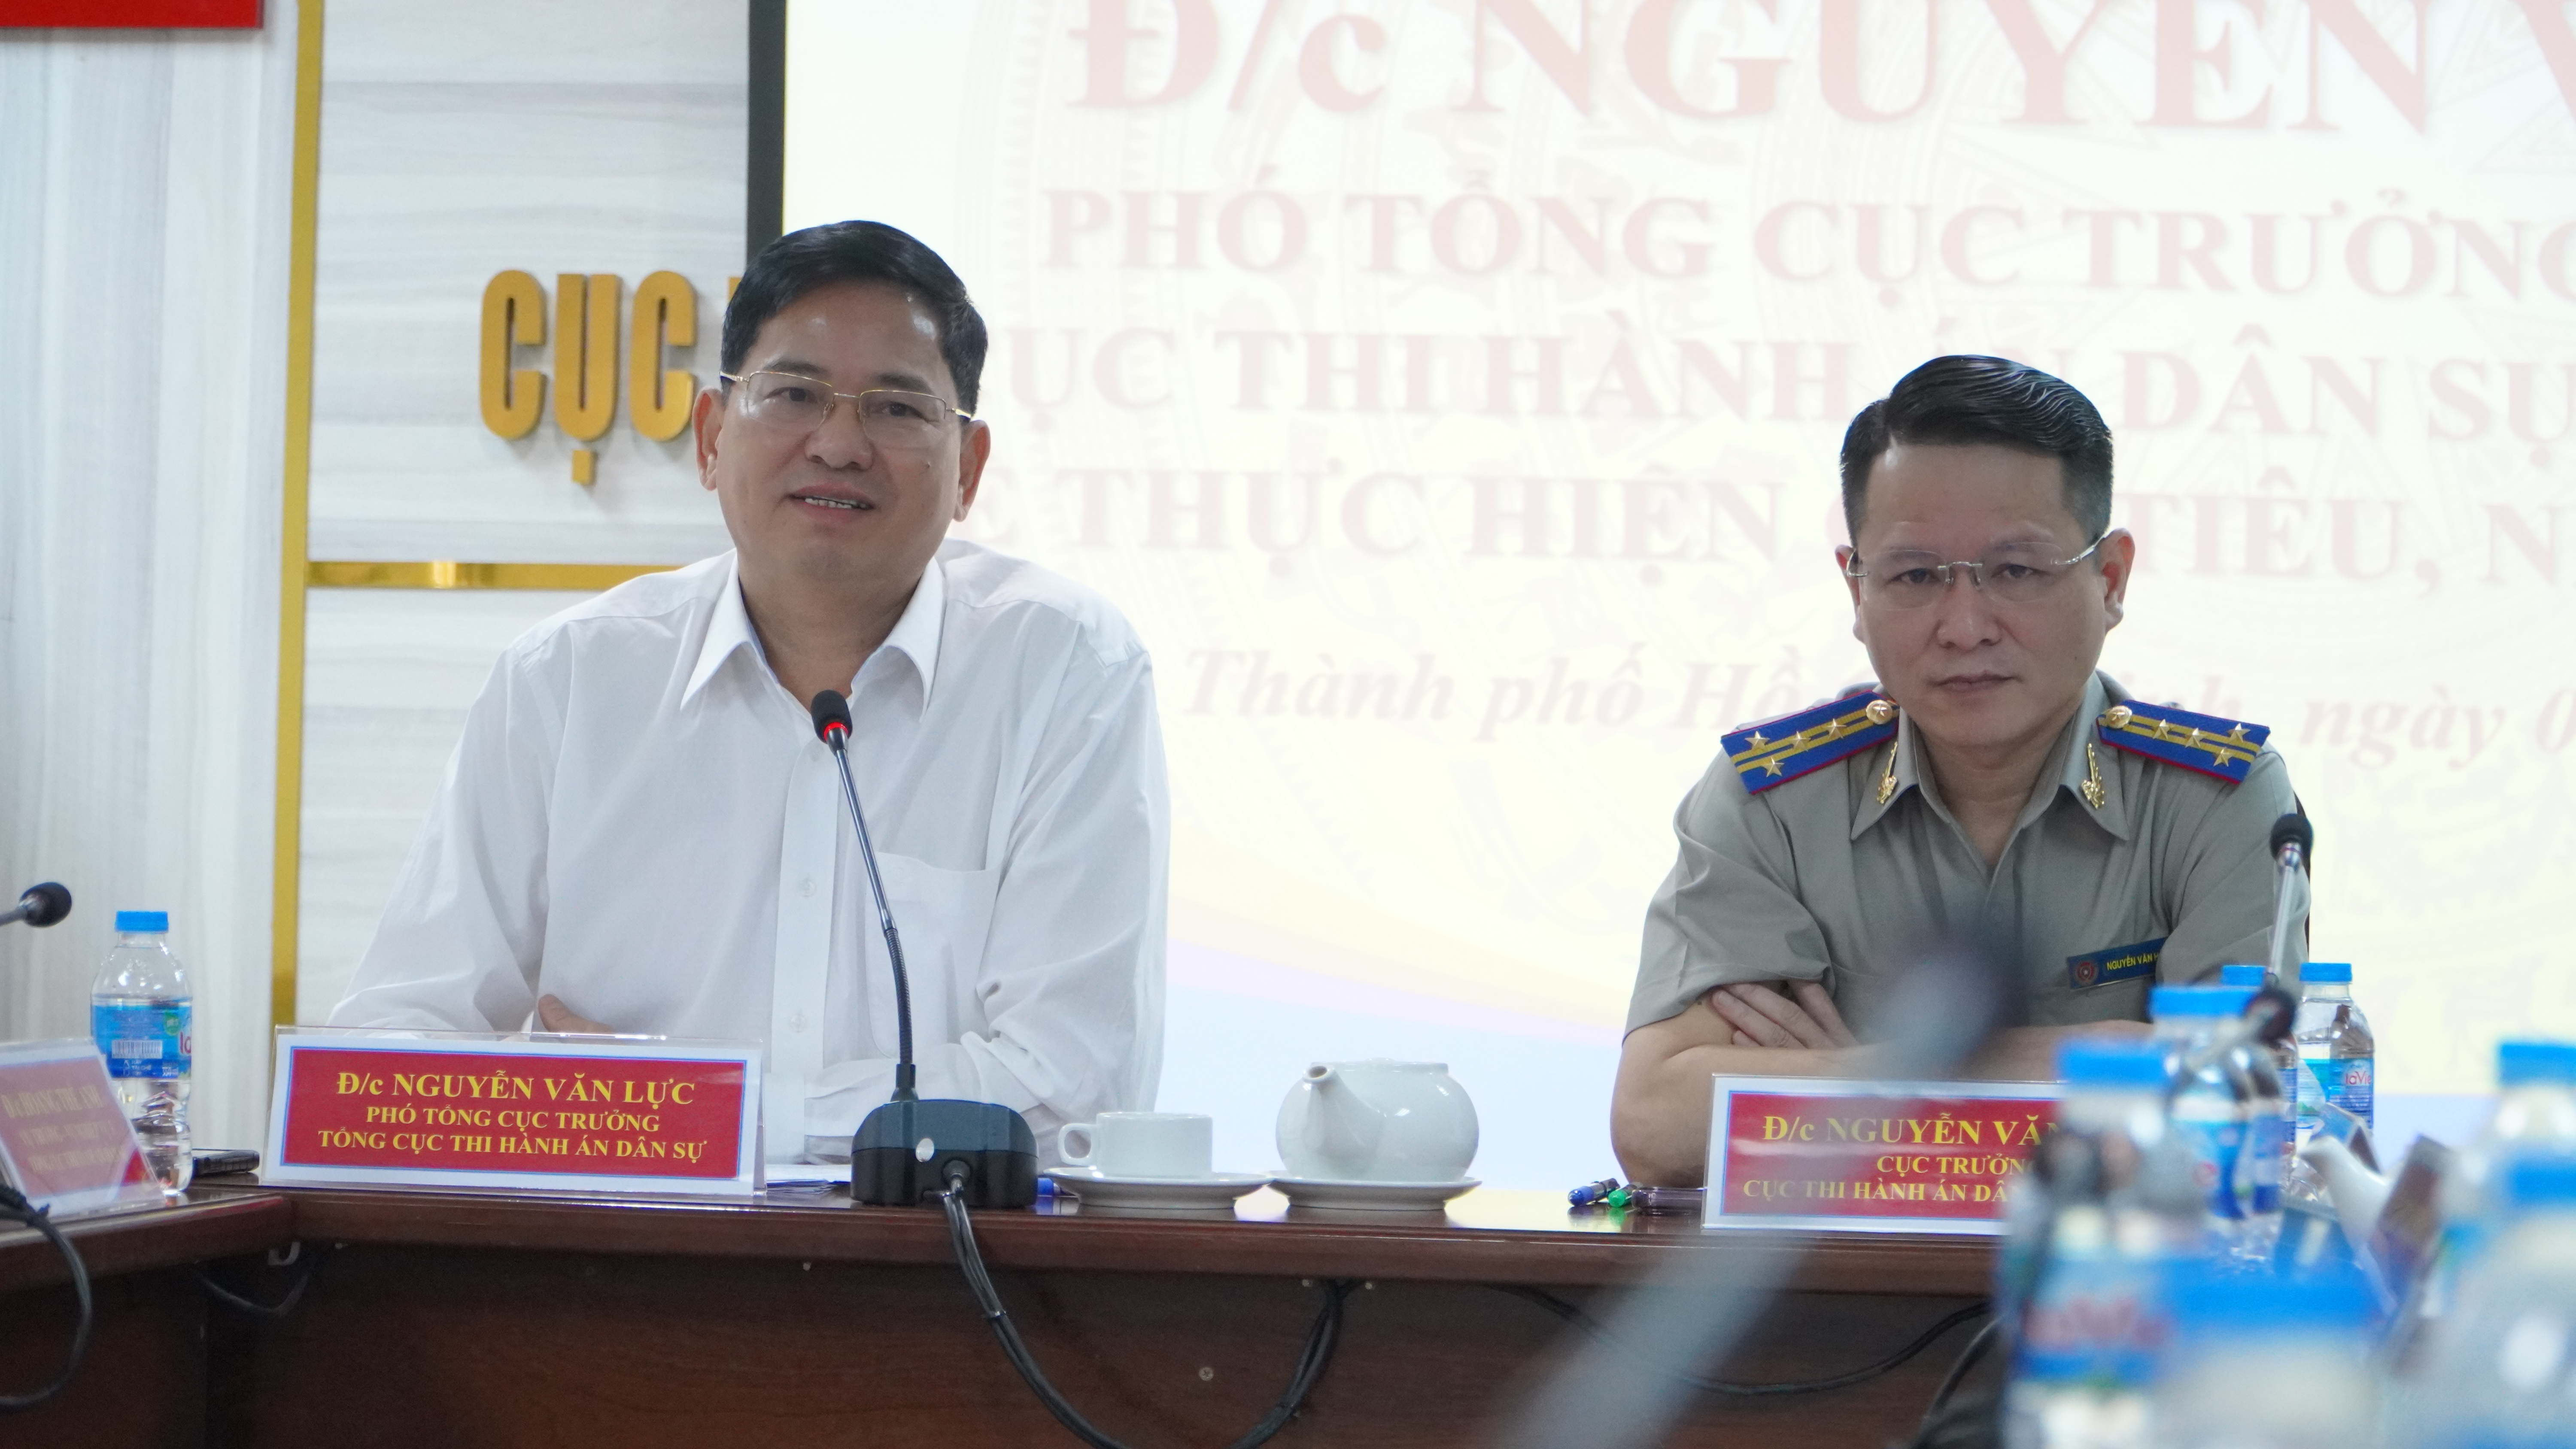 Phó Tổng cục trưởng Nguyễn Văn Lực làm việc về theo dõi thi hành án hành chính trên địa bàn TP HCM